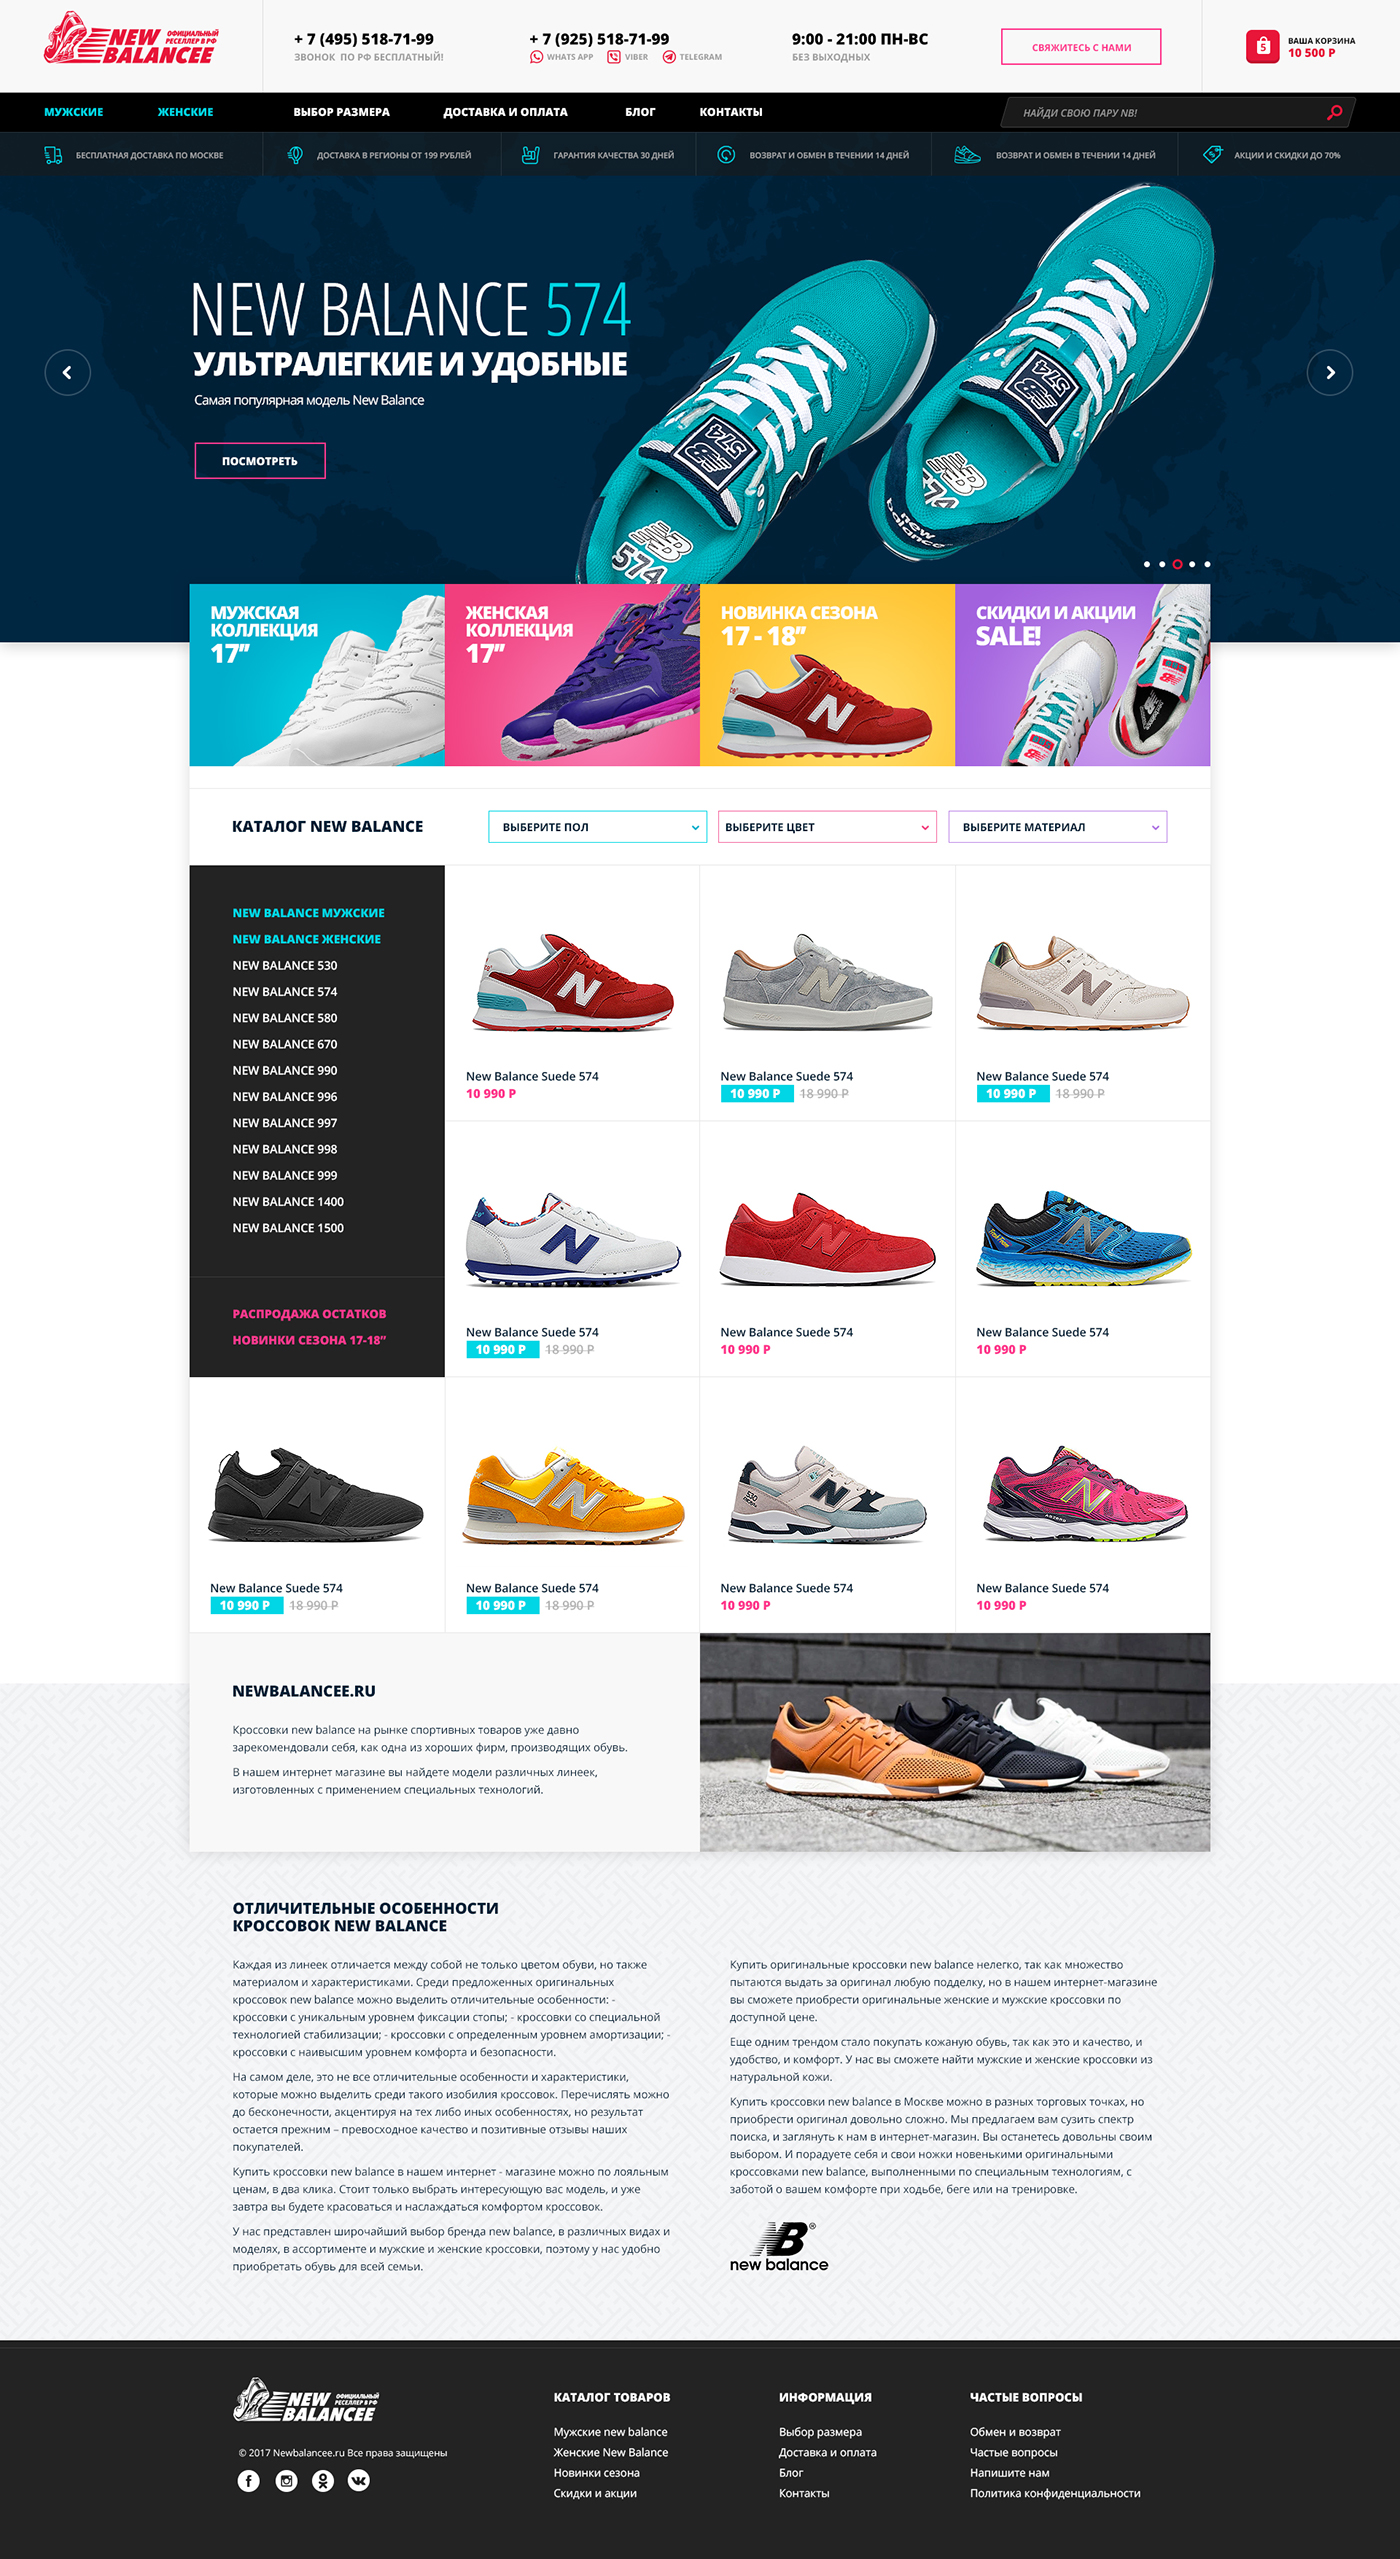 Vans New Balance converse shoes online shop store modern bright fullscreen